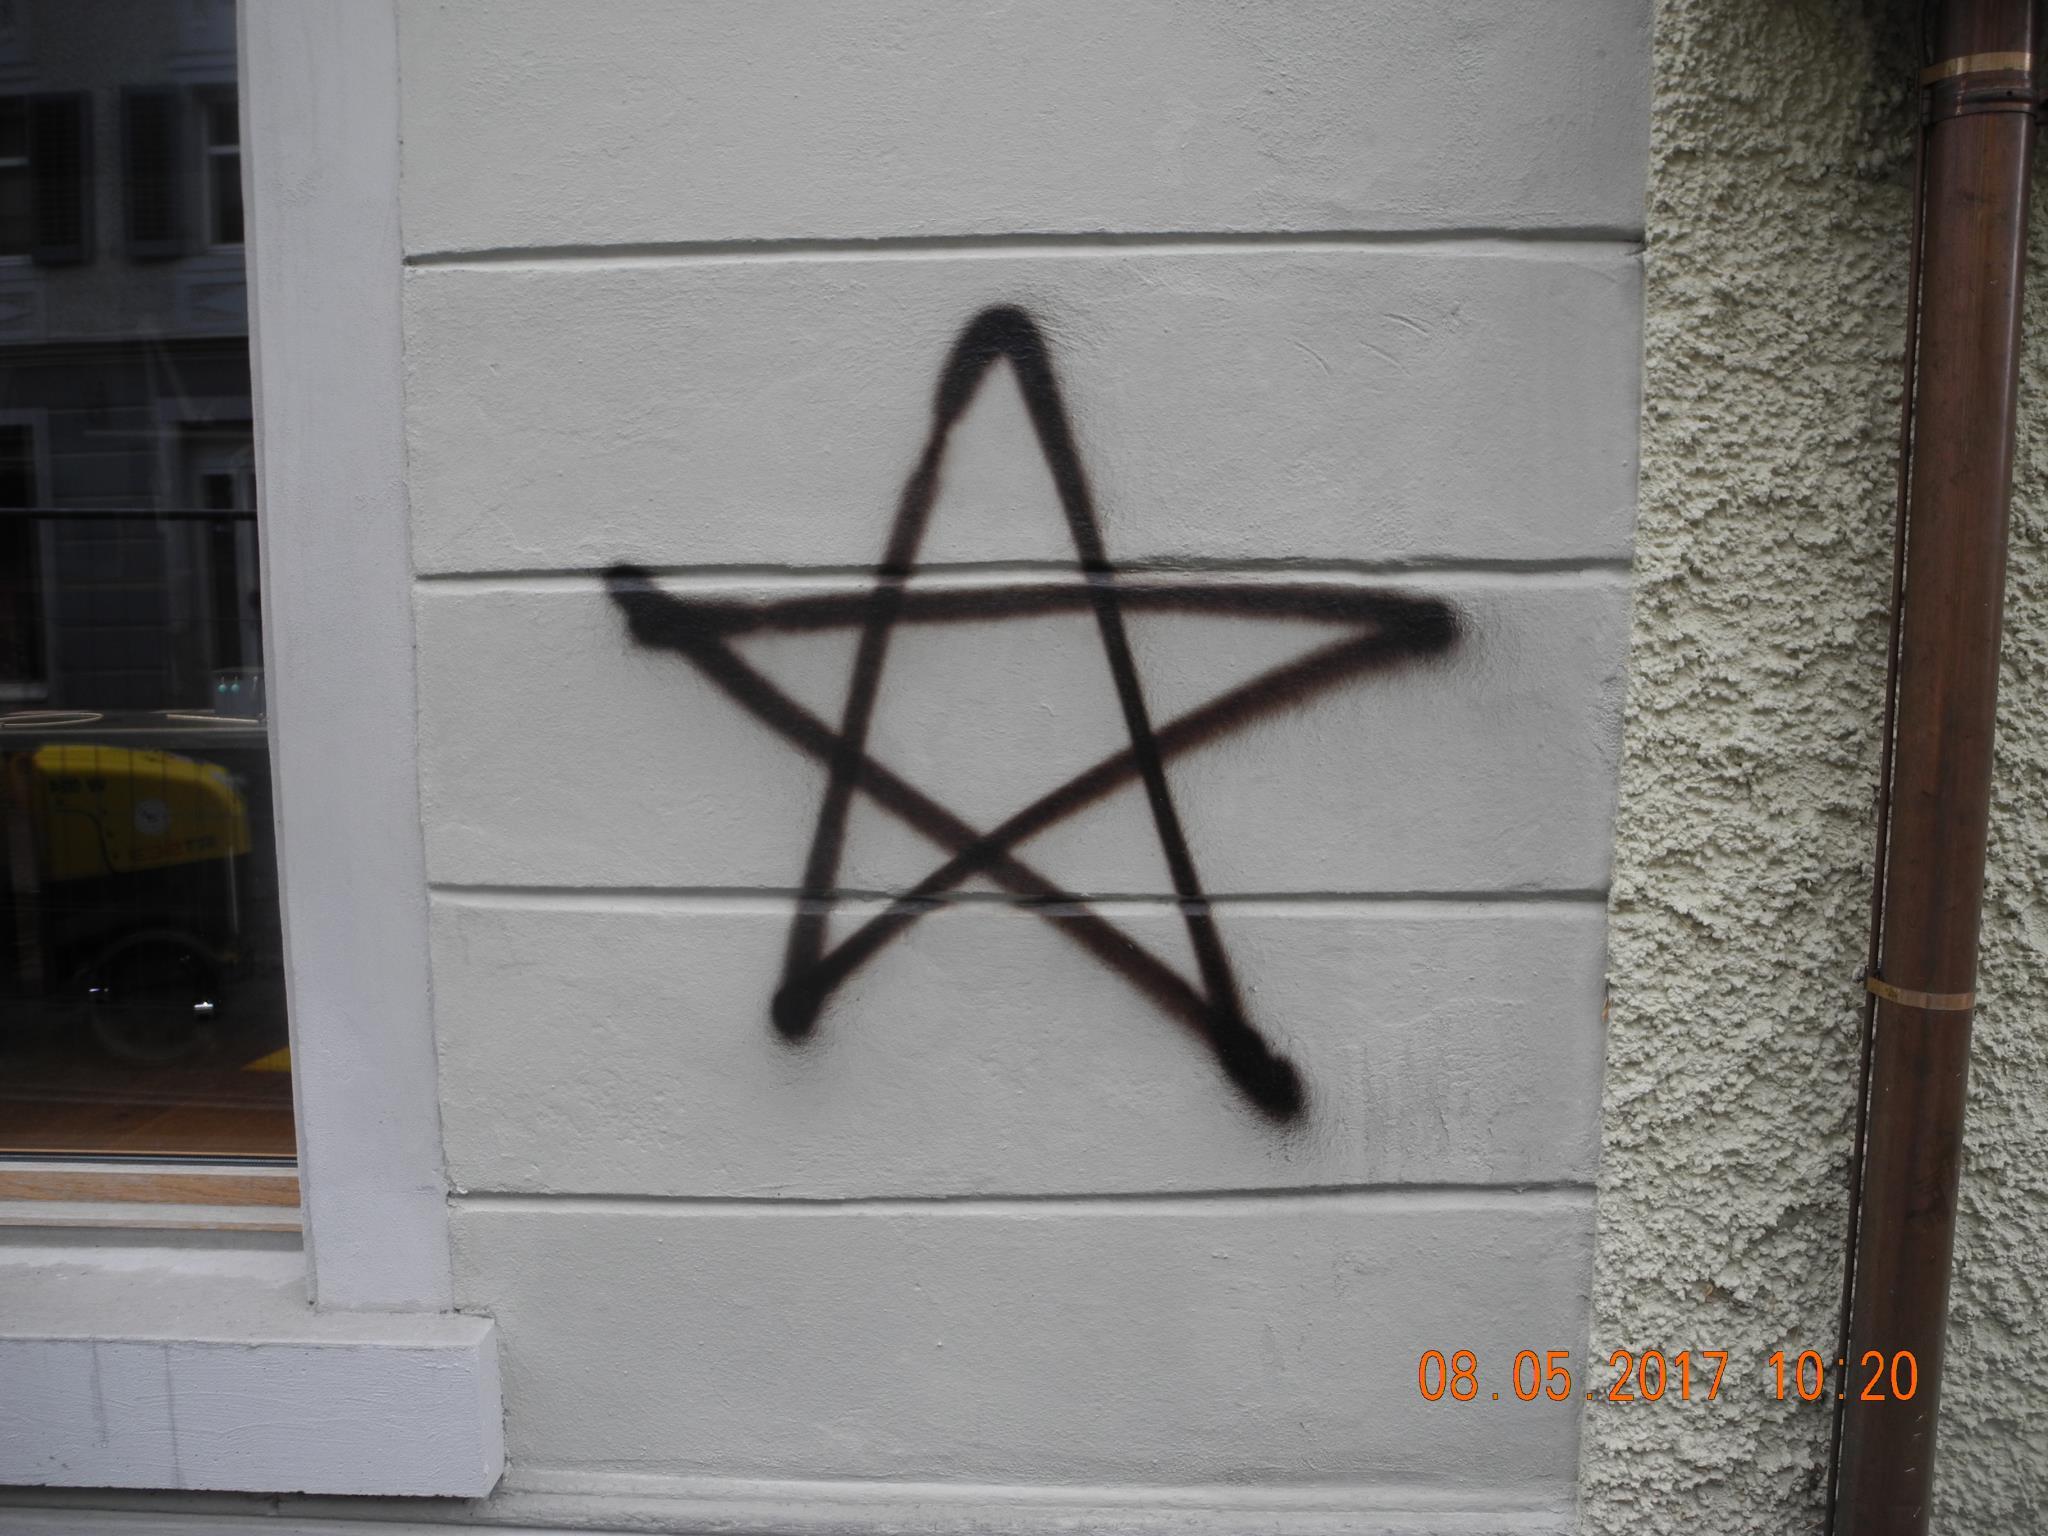 Auf eine Hausfassade in Hohenems wurde dieser Stern gesprüht.